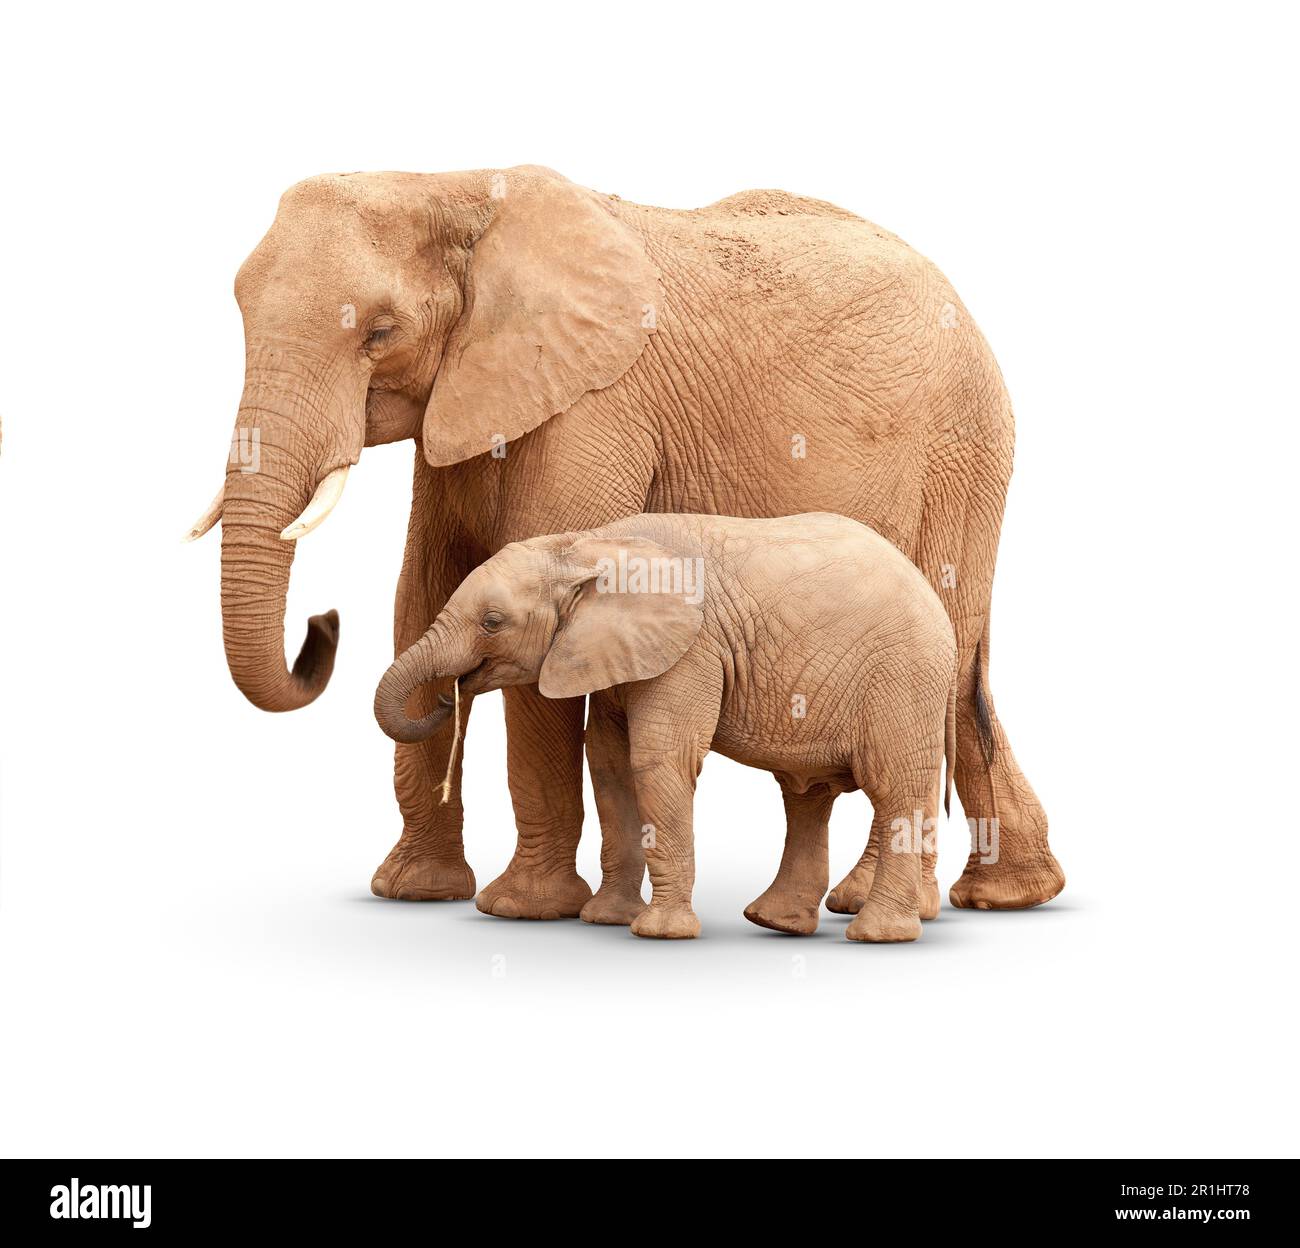 Mutter elefant Ausgeschnittene Stockfotos und -bilder - Alamy